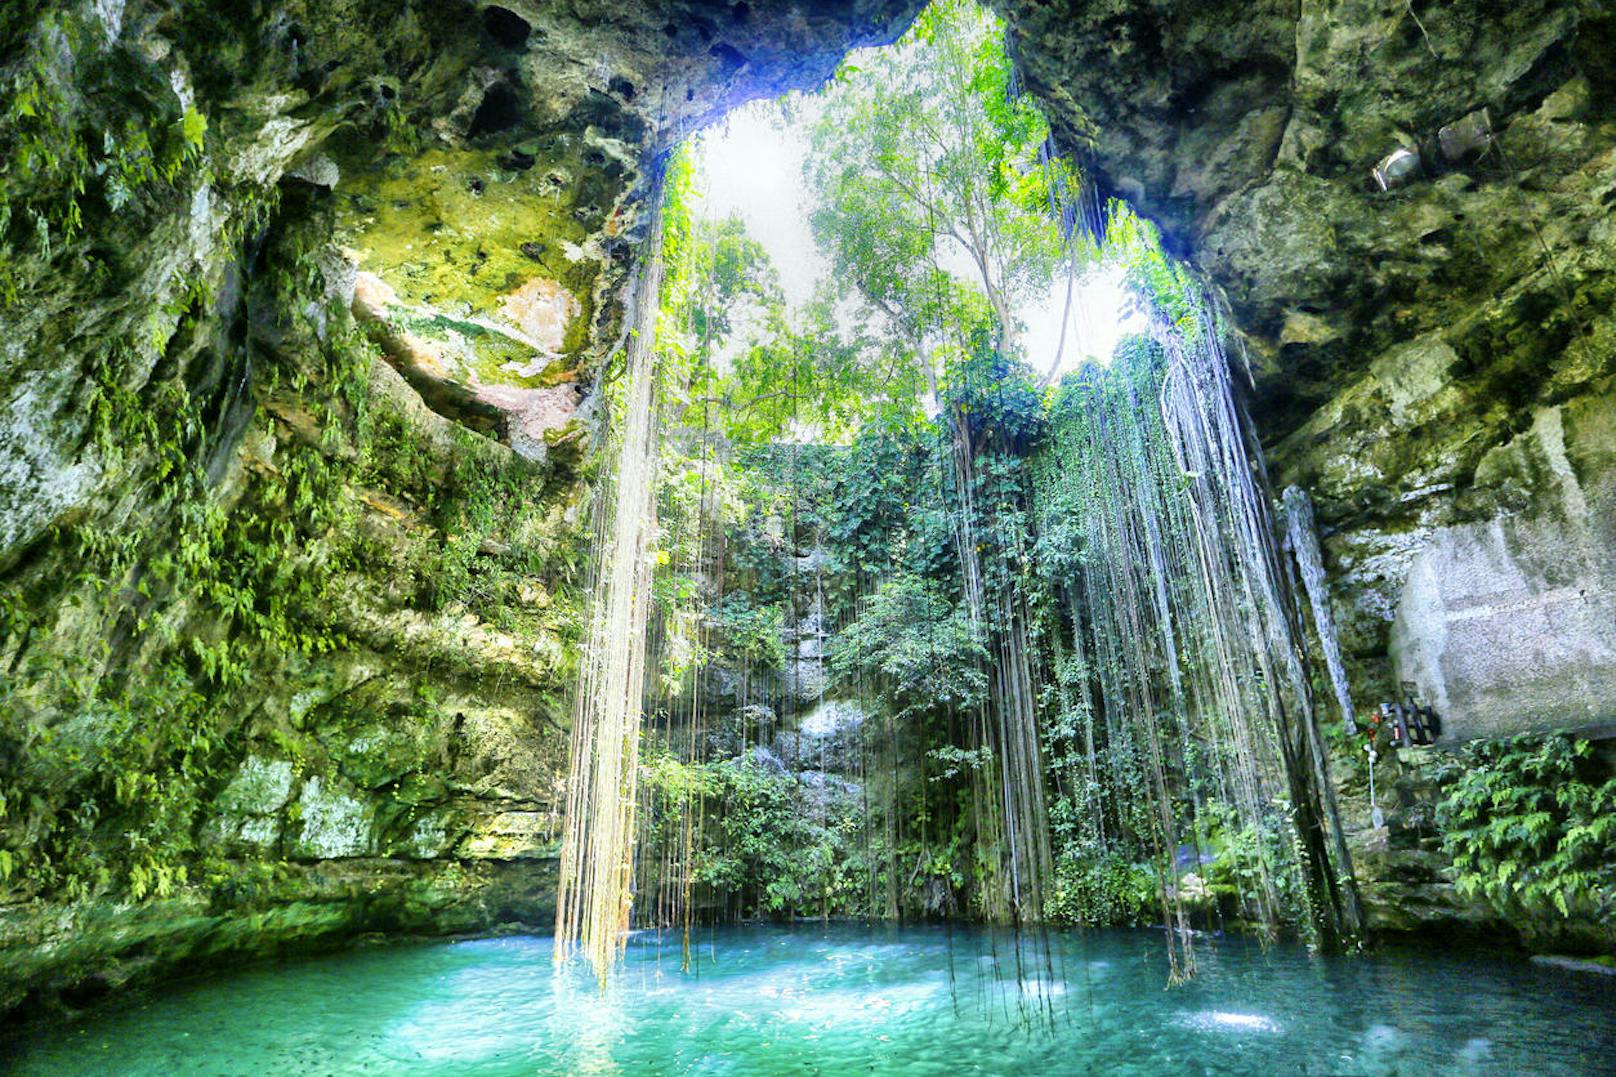 <b>Ik Kil Cenote - Yucatan, Mexiko</b>
In dieser märchenhaft schönen Höhle kann man nicht nur den beeindruckenden Anblick der grün bewachsenen Wände sowie der von der Deckenöffnung herab hängenden Lianen bewundern, sondern auch eine erfrischende Runde im glasklaren Wasser schwimmen.